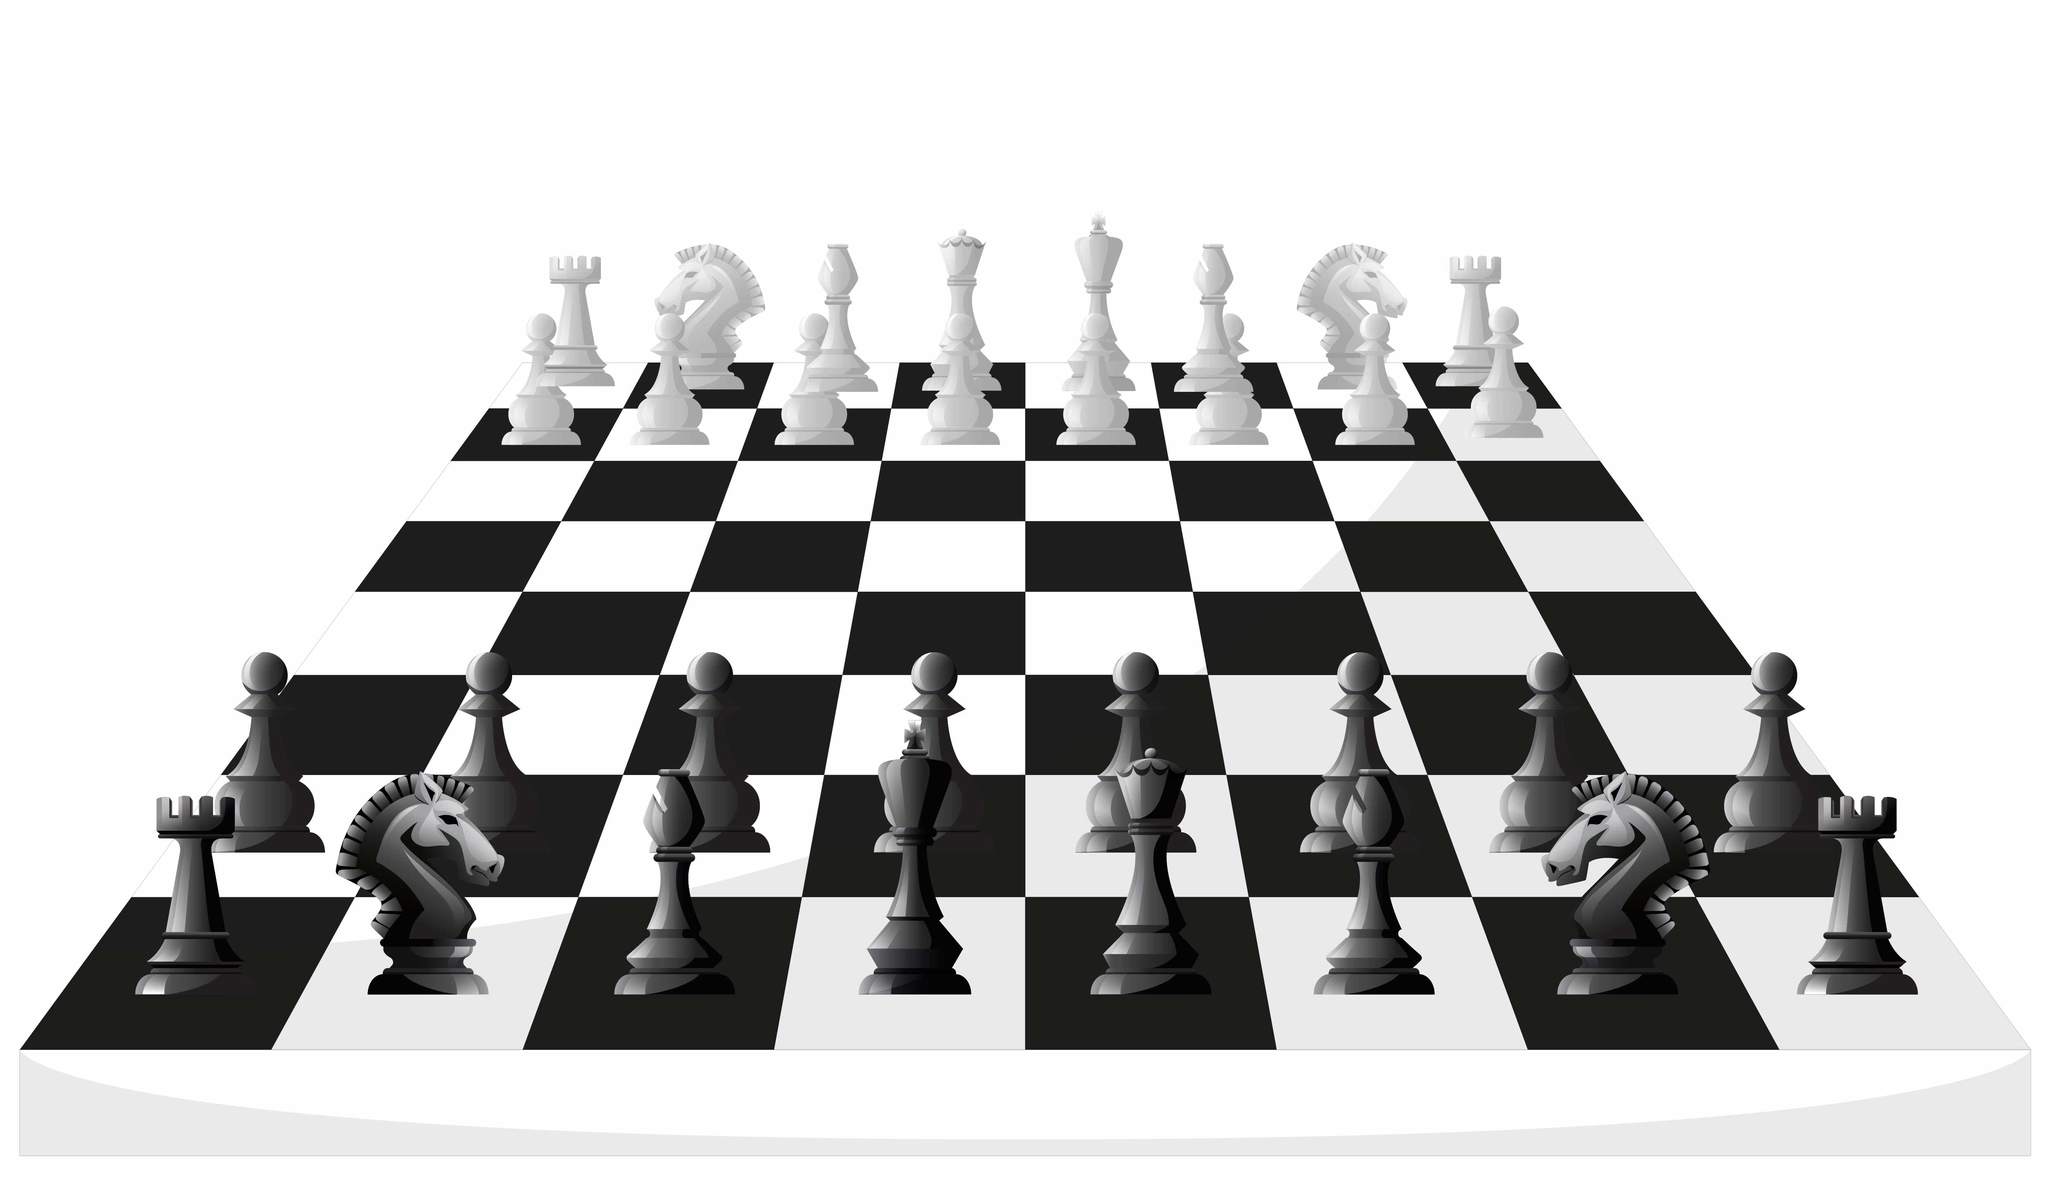 стол шахматный точка роста